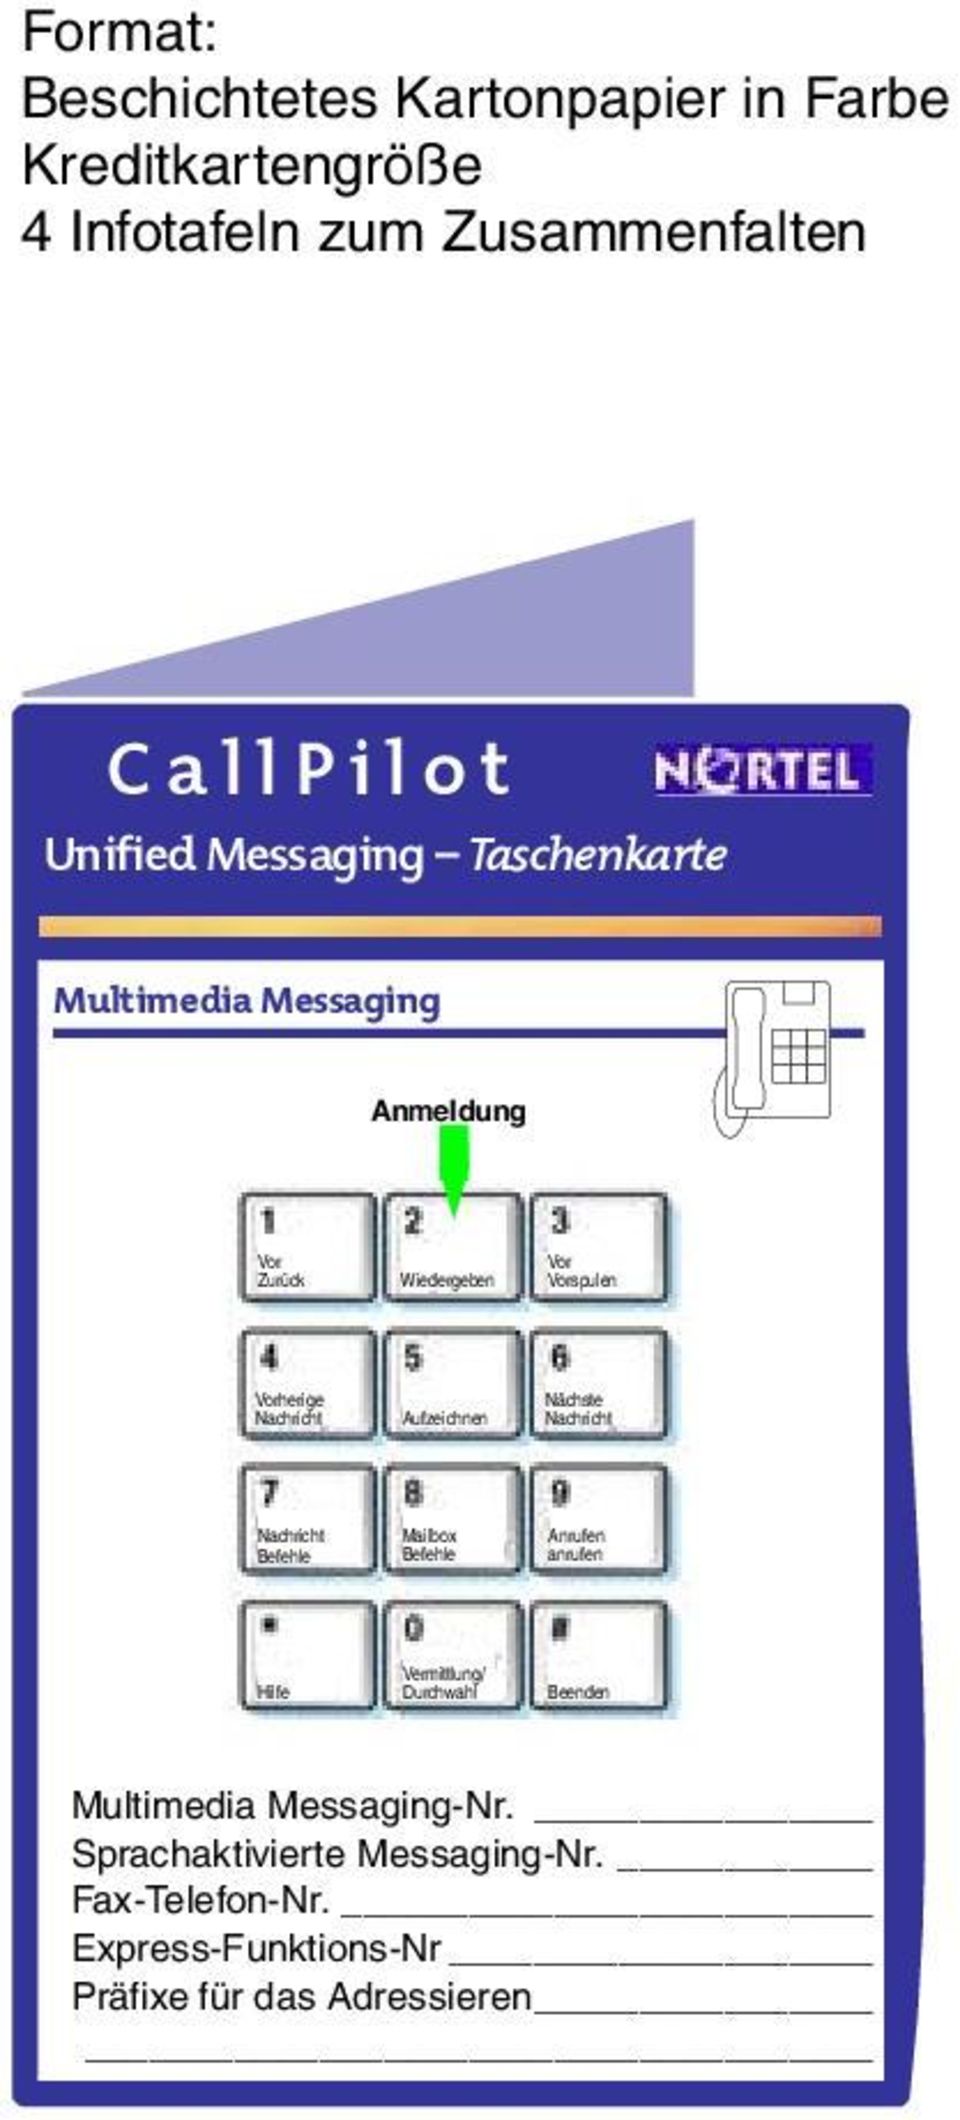 spulen herige Nächste Mailbox Anrufen anrufen Vermittlung/ Durchwahl Multimedia Messaging-Nr.